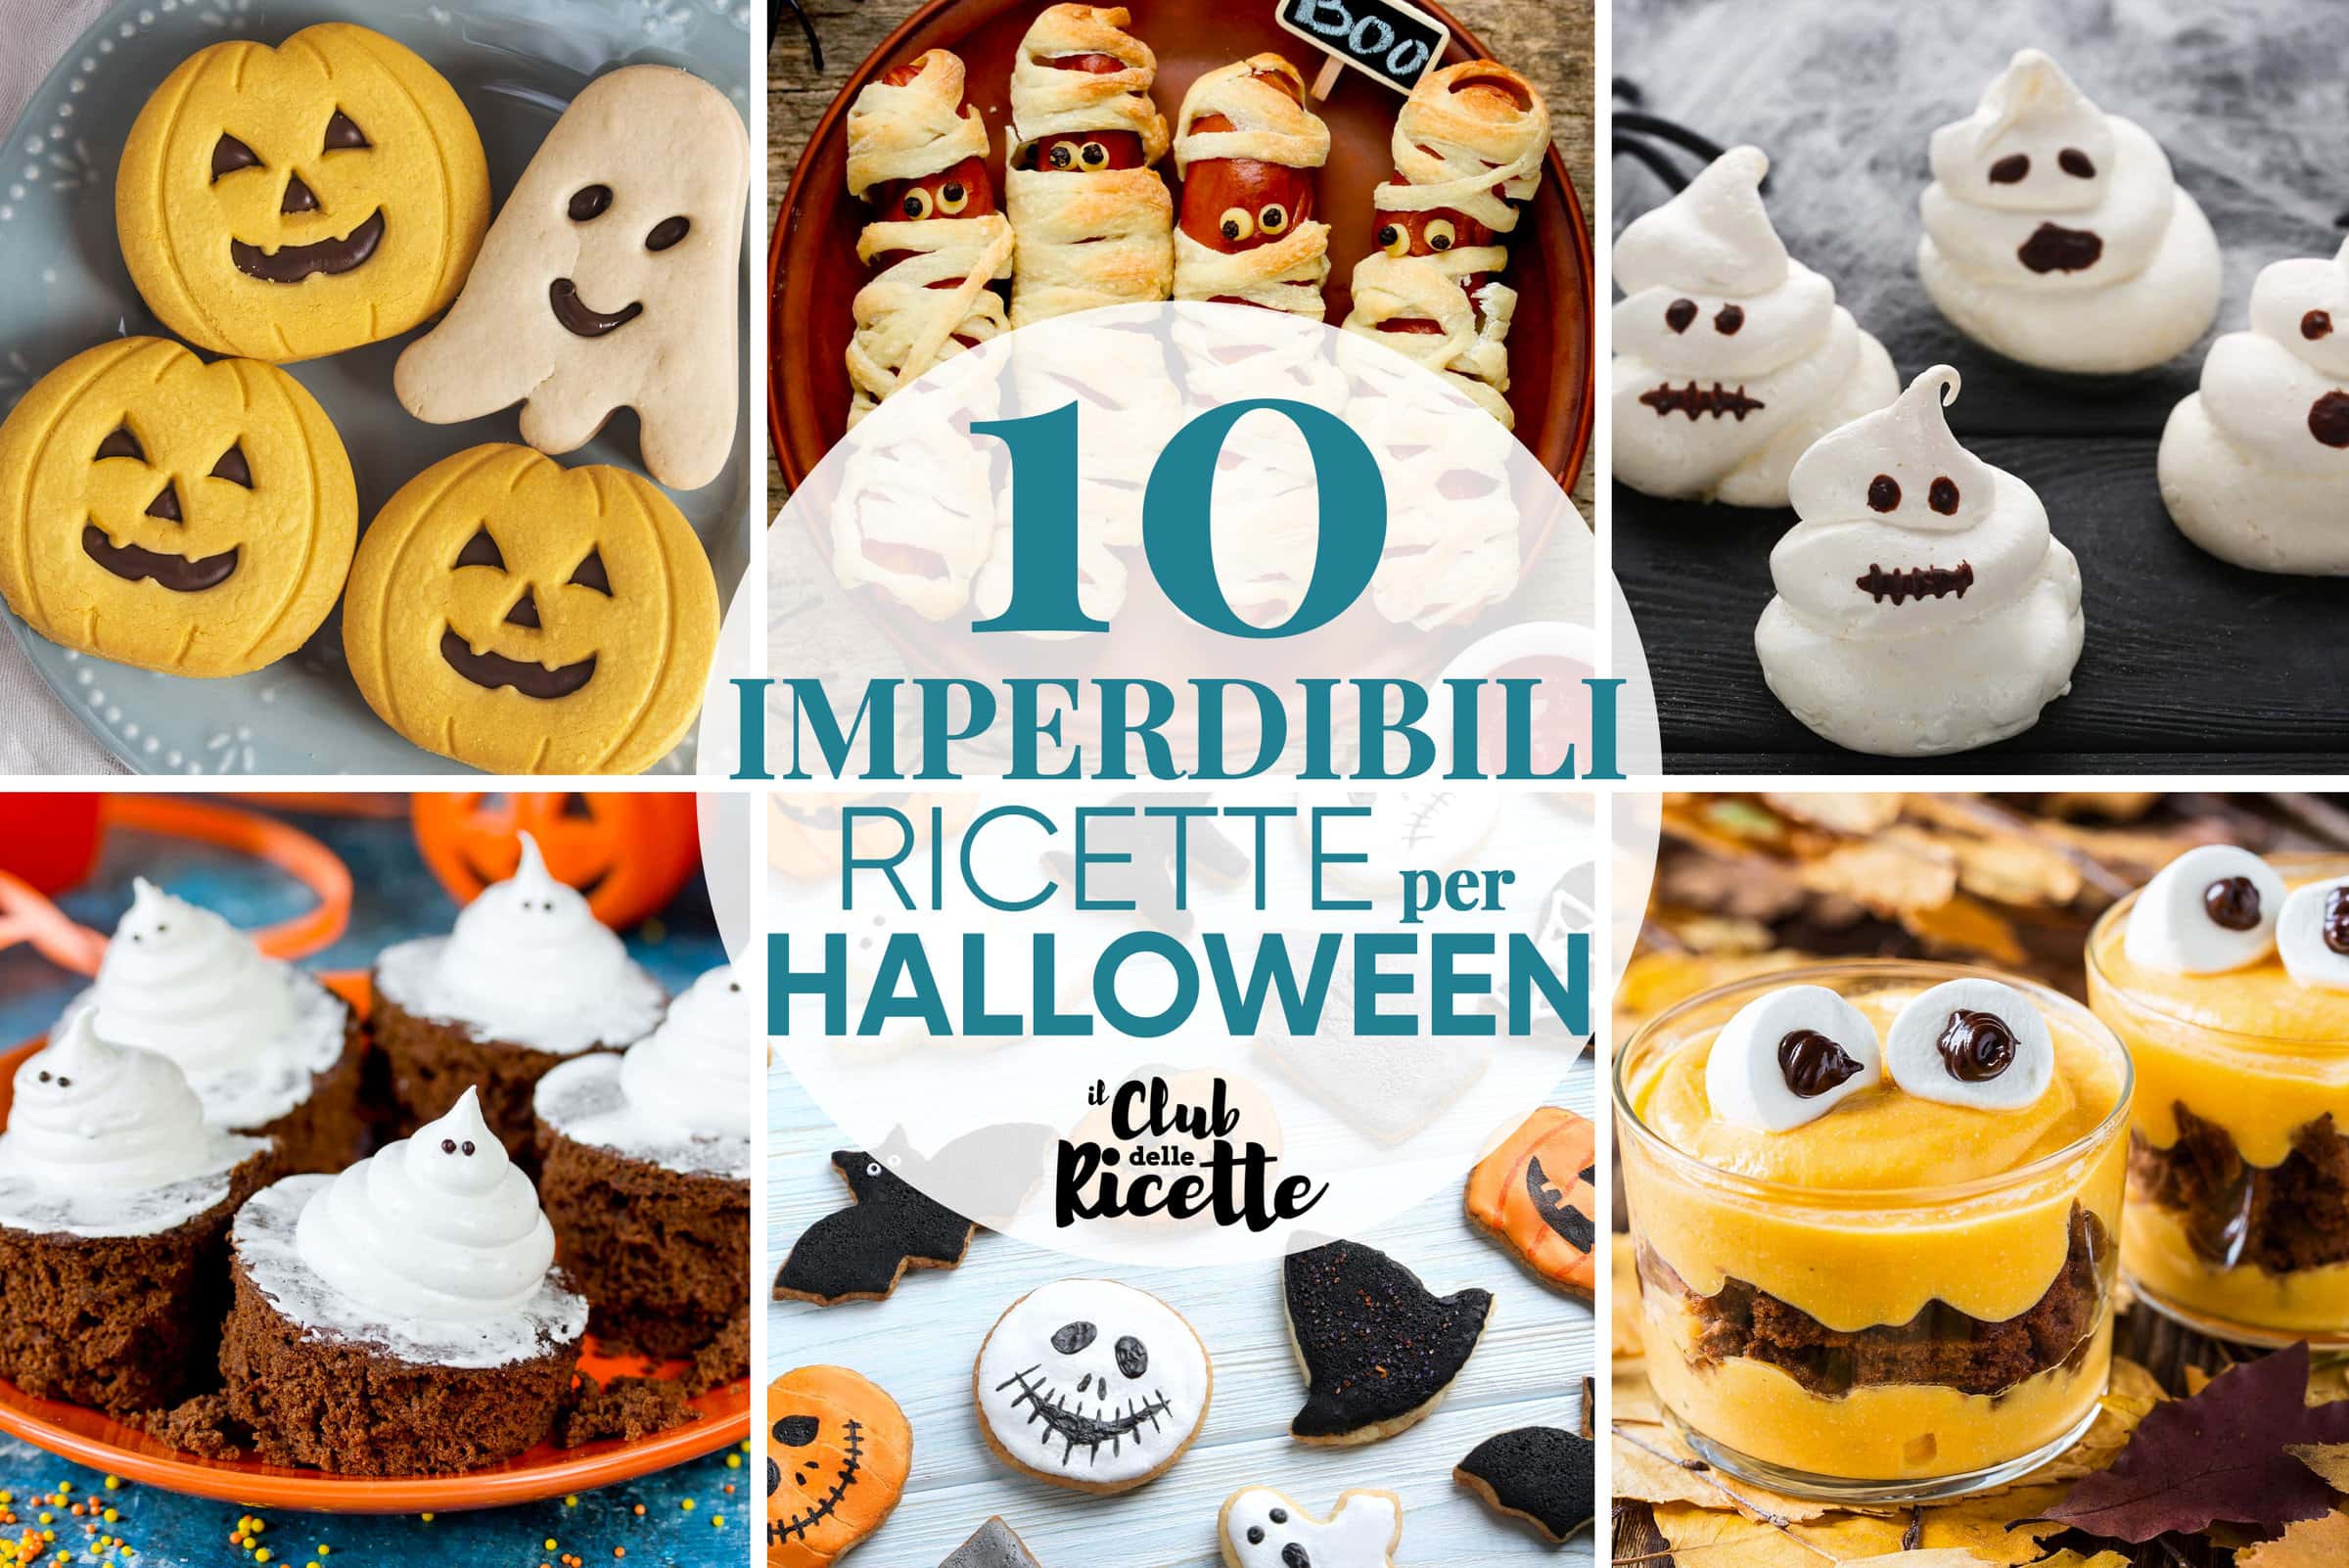 10 Imperdibili Ricette per Halloween